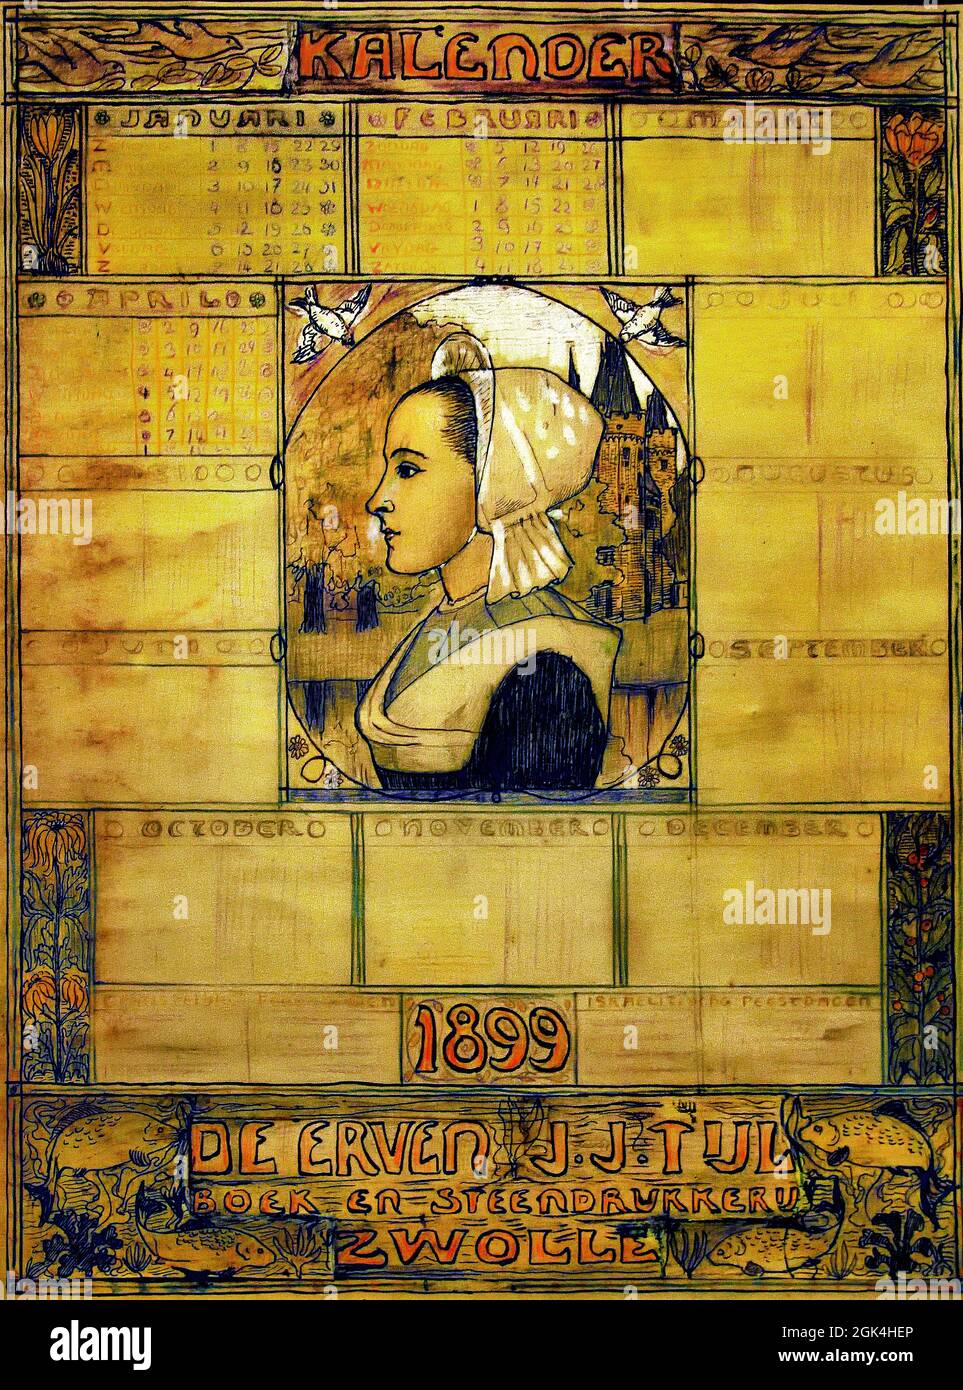 Calendario de la niña campesina 1899 por Johan Cohen ( Boek y Steendrukkerij De Erven J.J. Tijl. Zwolle, 1898, ) Holanda, holandés, Libro y Stone Printing Company Foto de stock